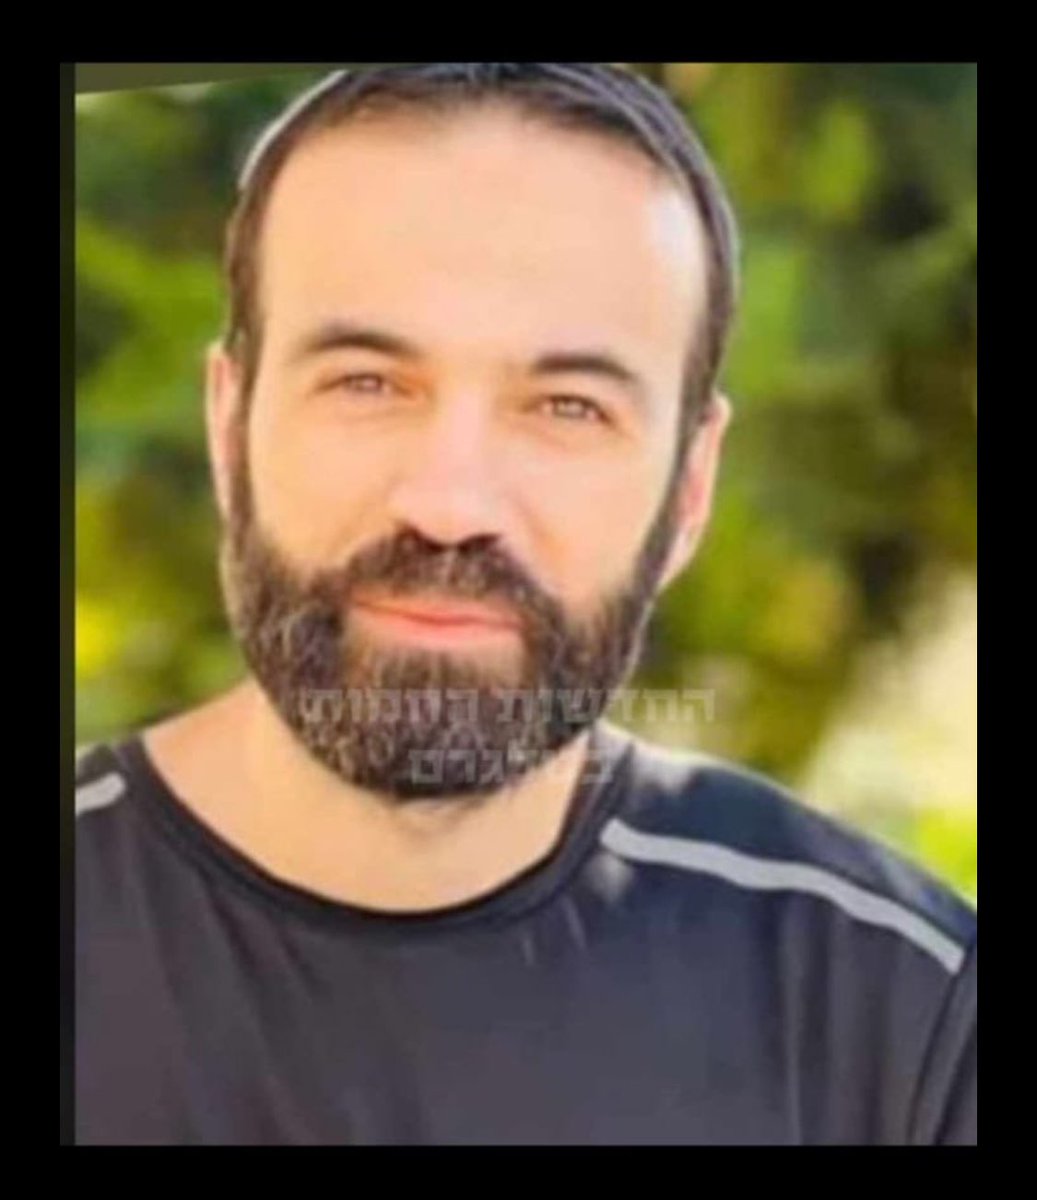 Este es el civil que murió hoy por el impacto directo de un misil antitanque de Hezbollah en la aldea de Adamit, cerca de la frontera libanesa. Su nombre es Ader Gitsis. No era residente del lugar. Más bien vino a traer regalos del Día de la Independencia para los soldados